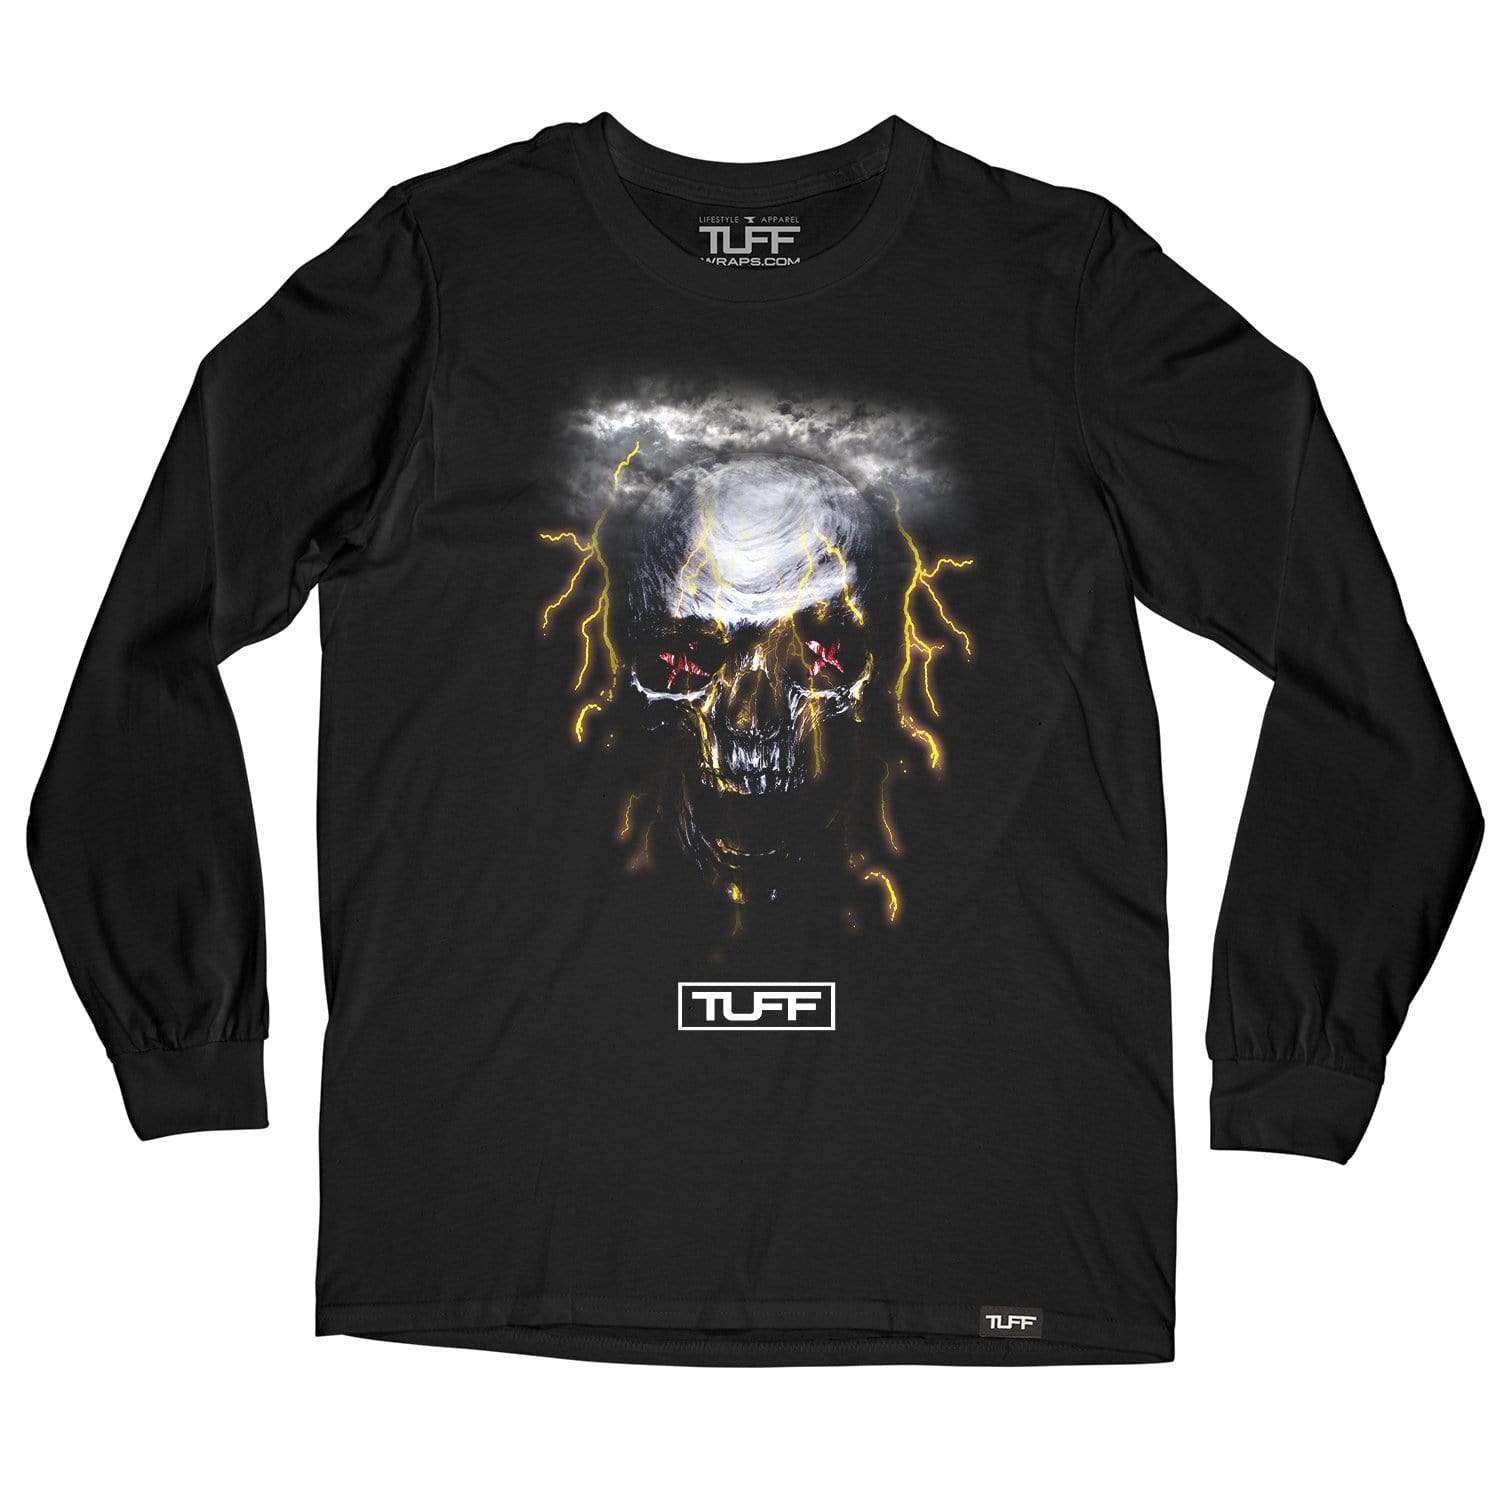 TUFF Lightning Skull Long Sleeve Tee Men's Long Sleeve T-Shirt